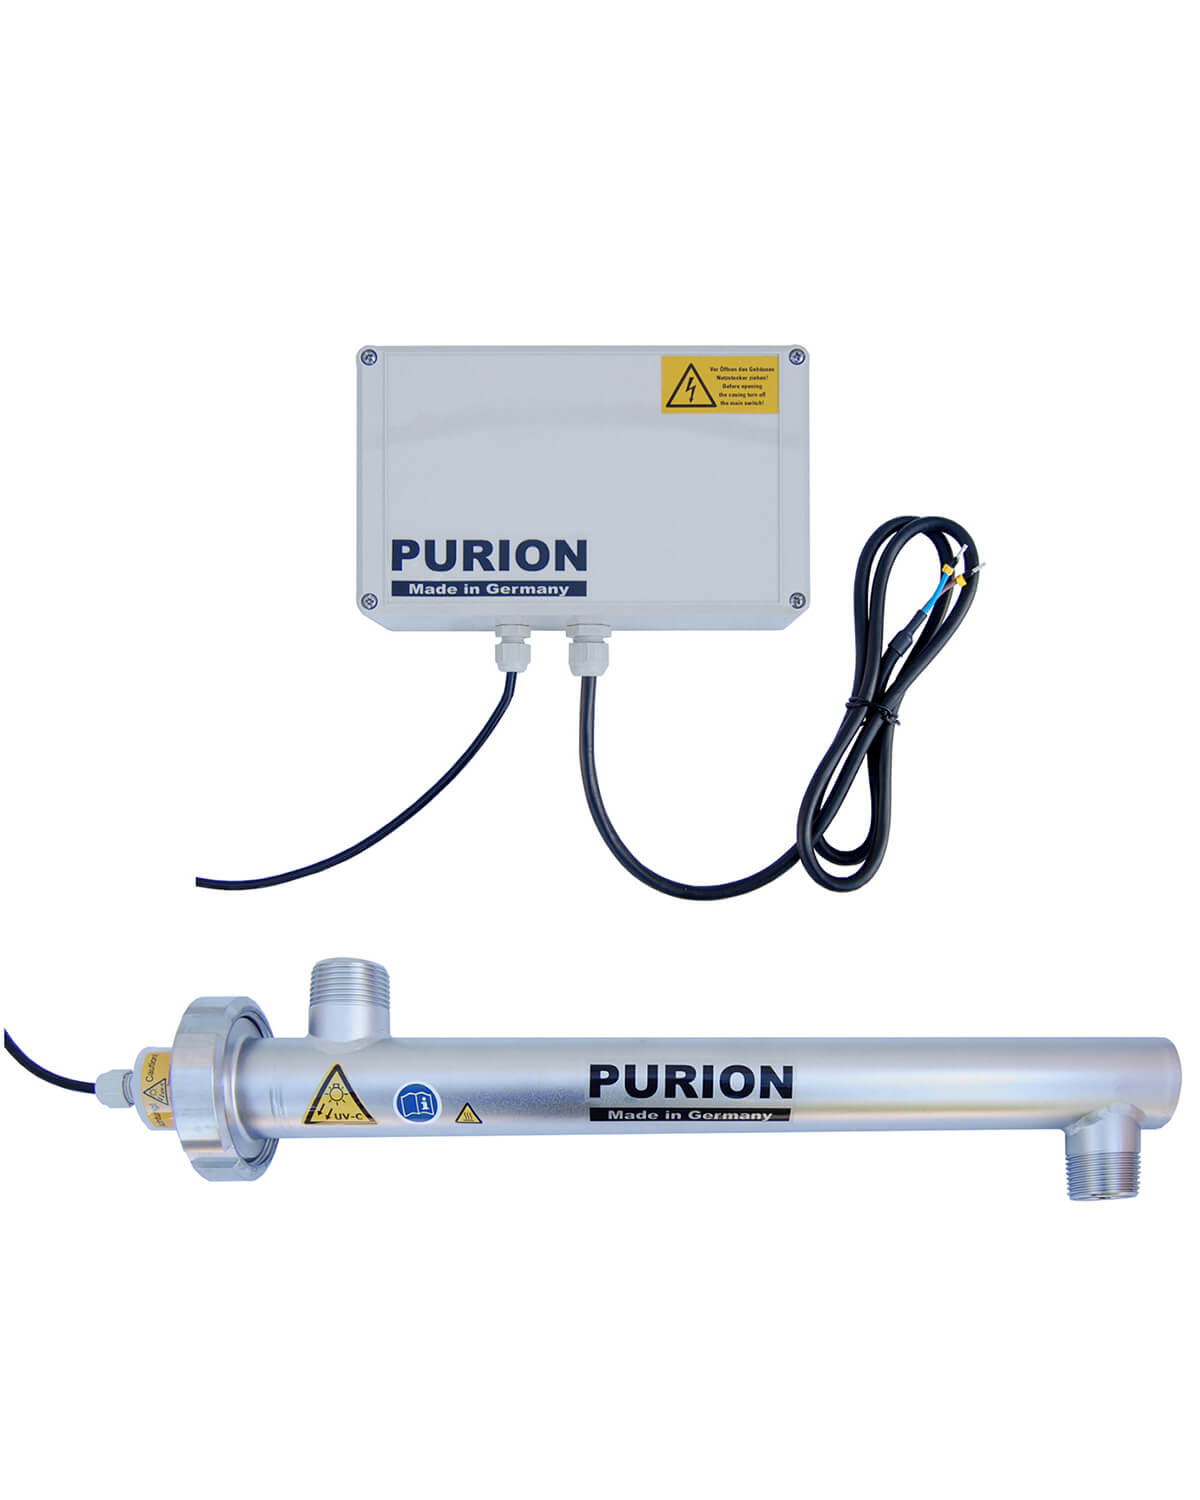 Der PURION 1000 PRO Basic der PURION GmbH nutzt UV-C-Licht für eine erstklassige Desinfektion.